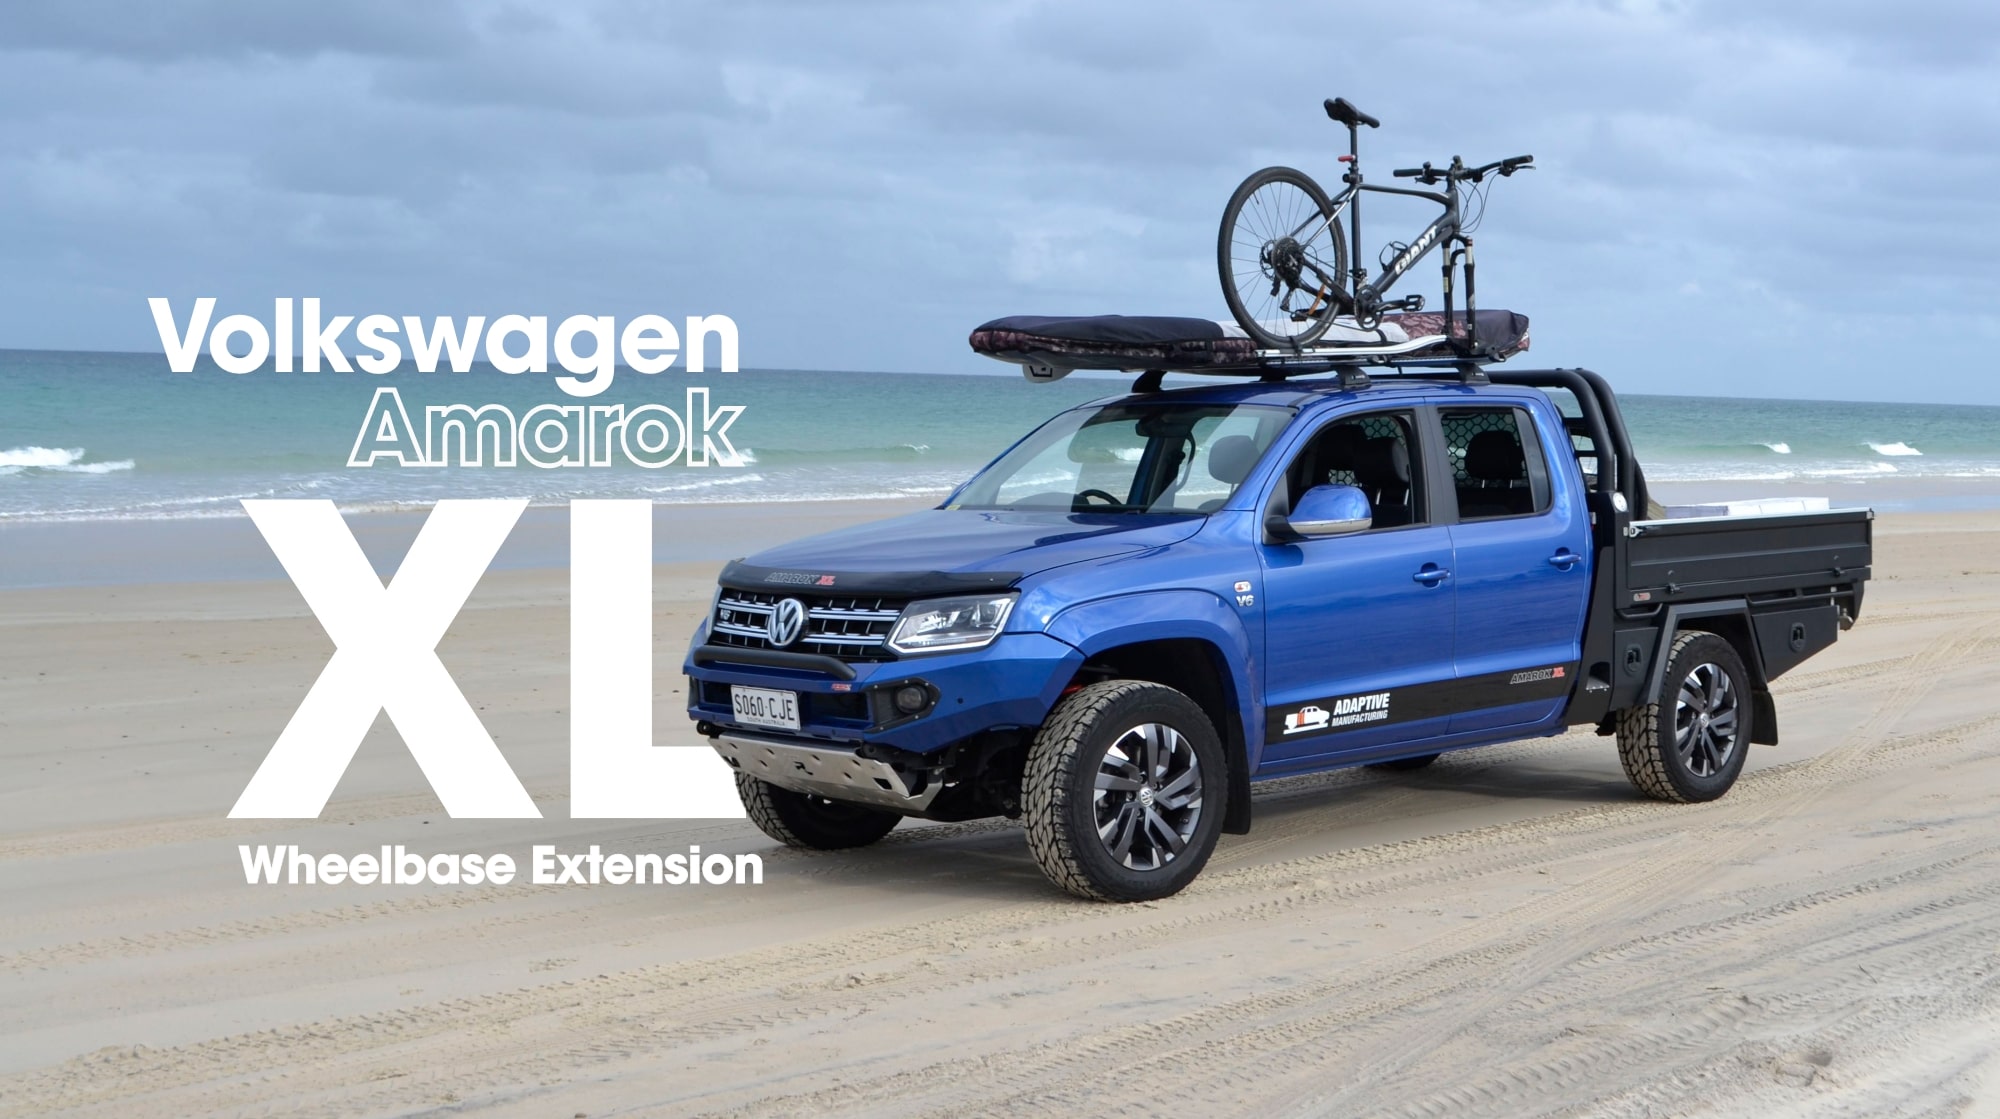 Volkswagen Amarok XL Wheelbase Extensions